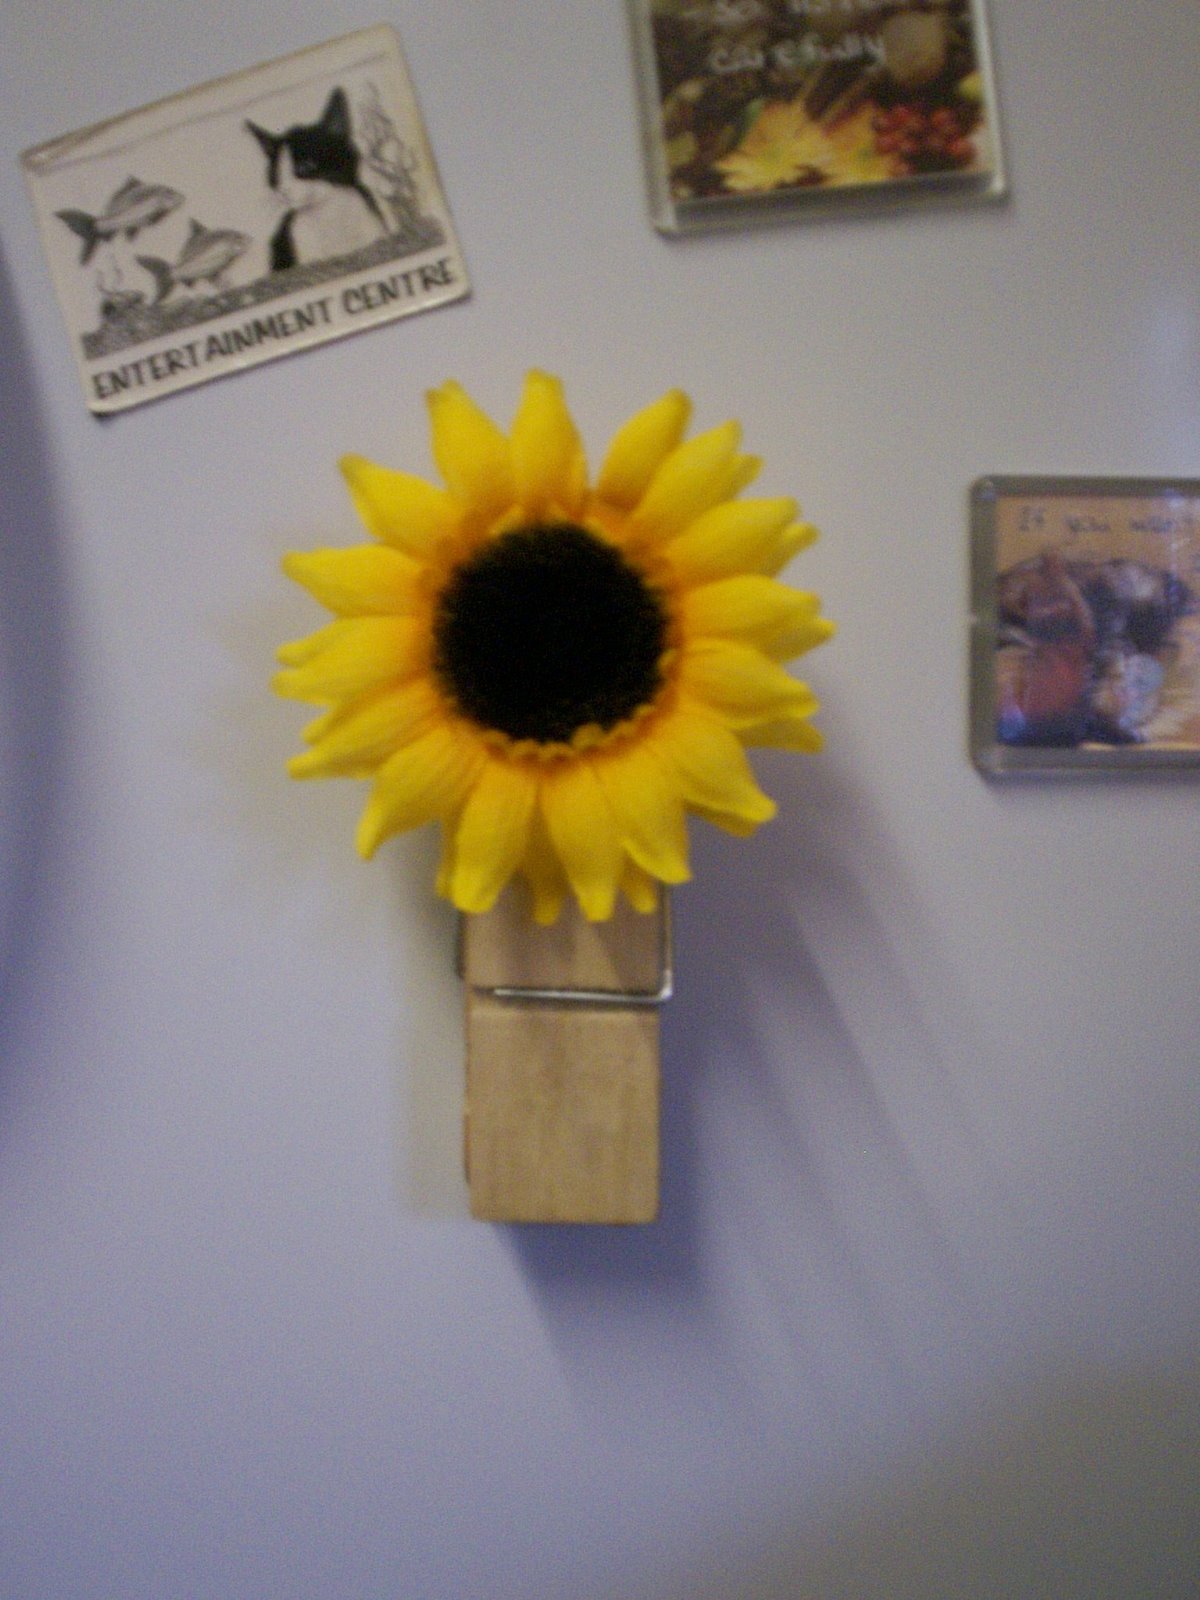 [sunflower2.jpg]